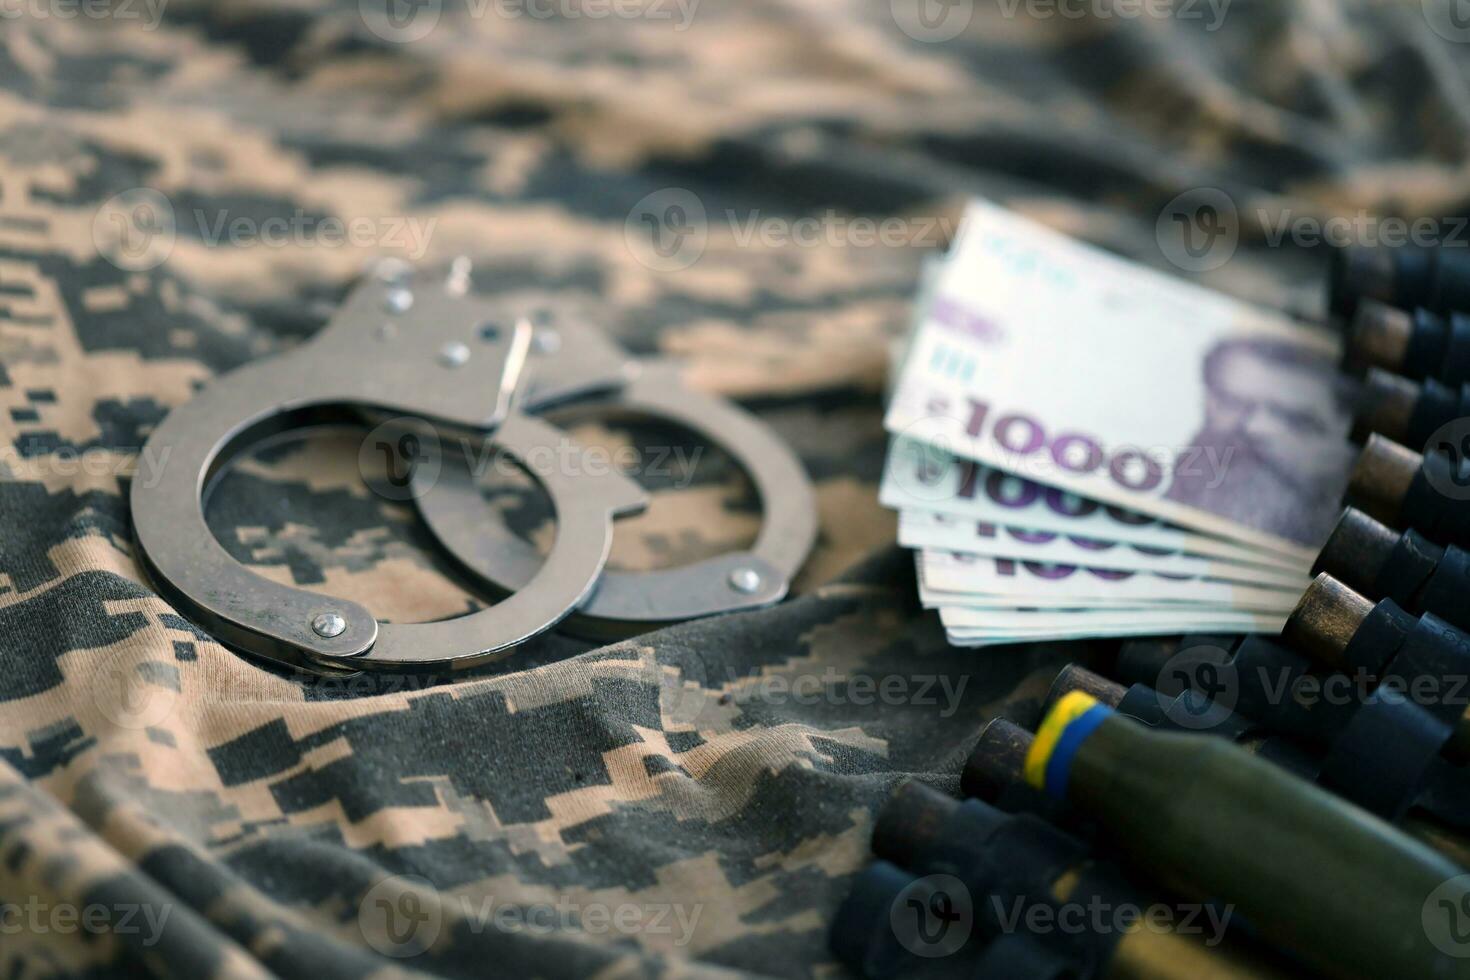 ucraino esercito macchina pistola cintura conchiglie e manette su militare uniforme. concetto di corruzione e guerra crimini foto